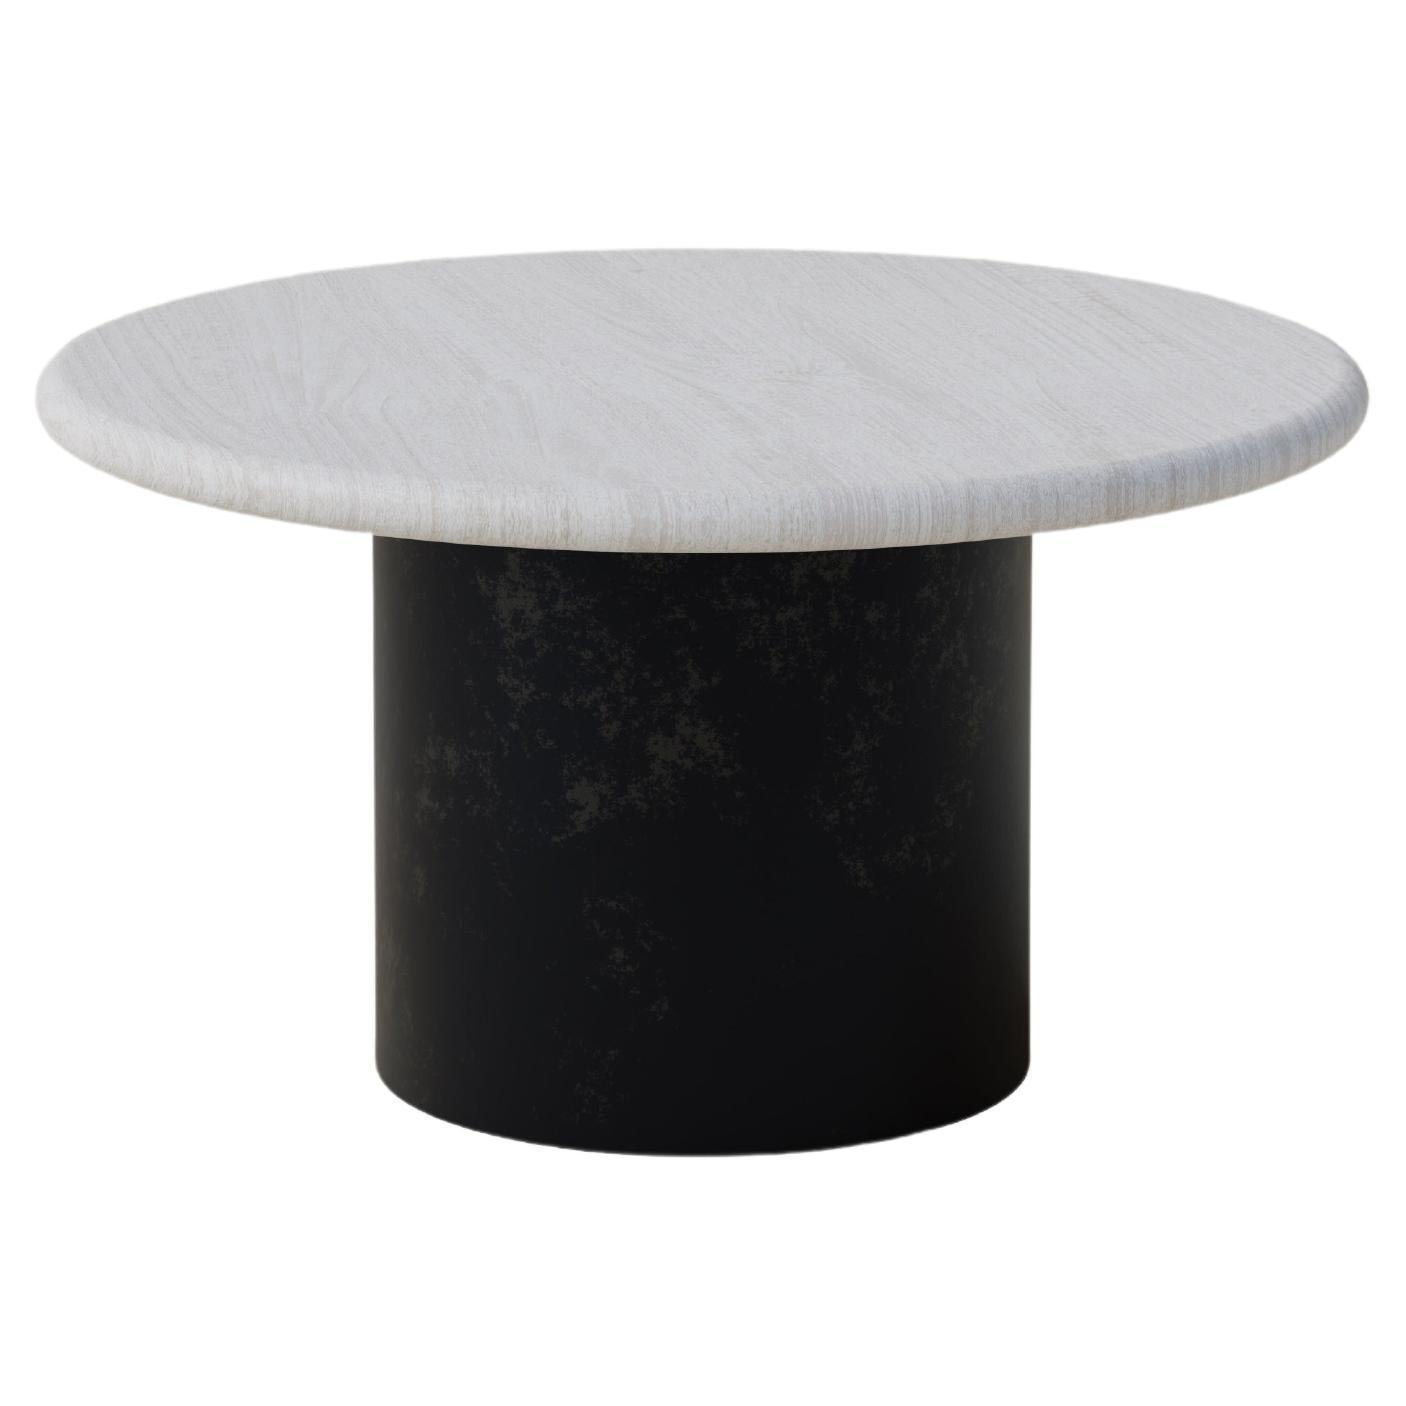 Table basse en forme de goutte d'eau, 600 cm, chêne blanc / patiné